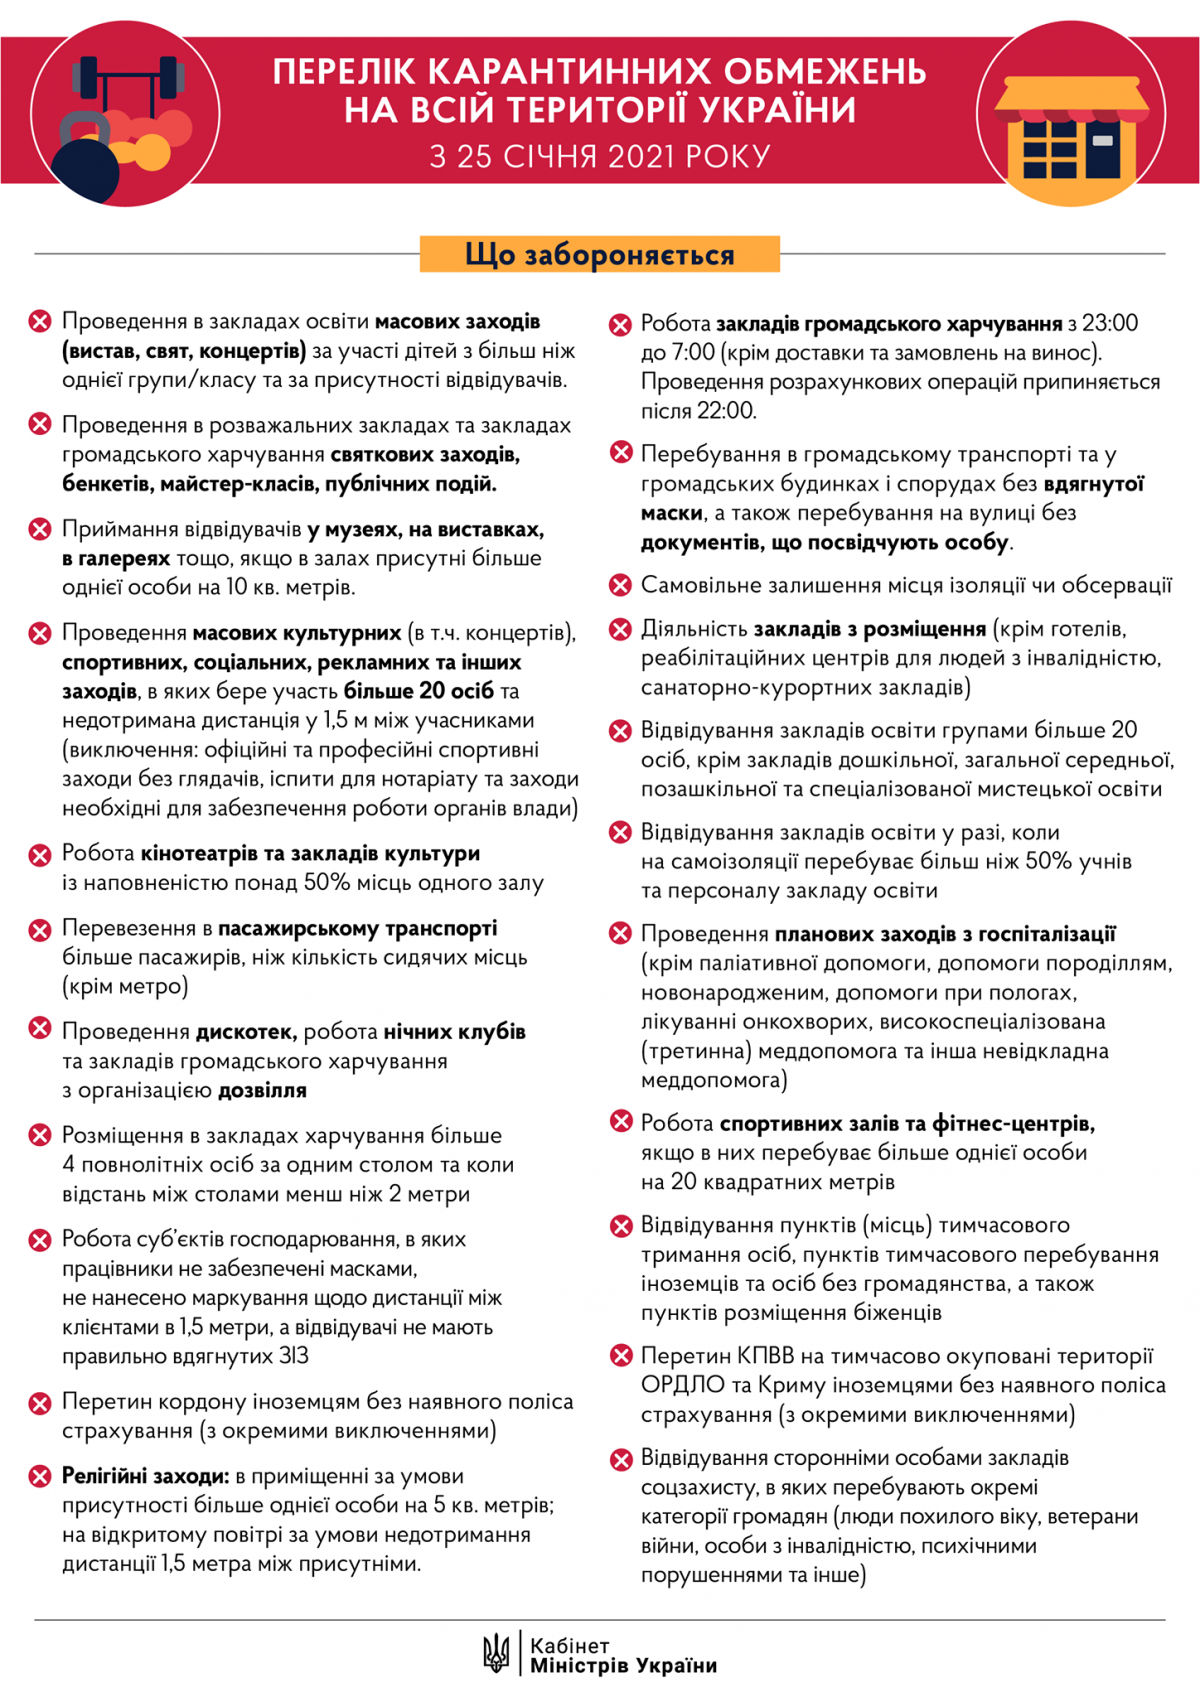 С понедельника Украина выходит из жесткого карантина: какие ограничения останутся. Список